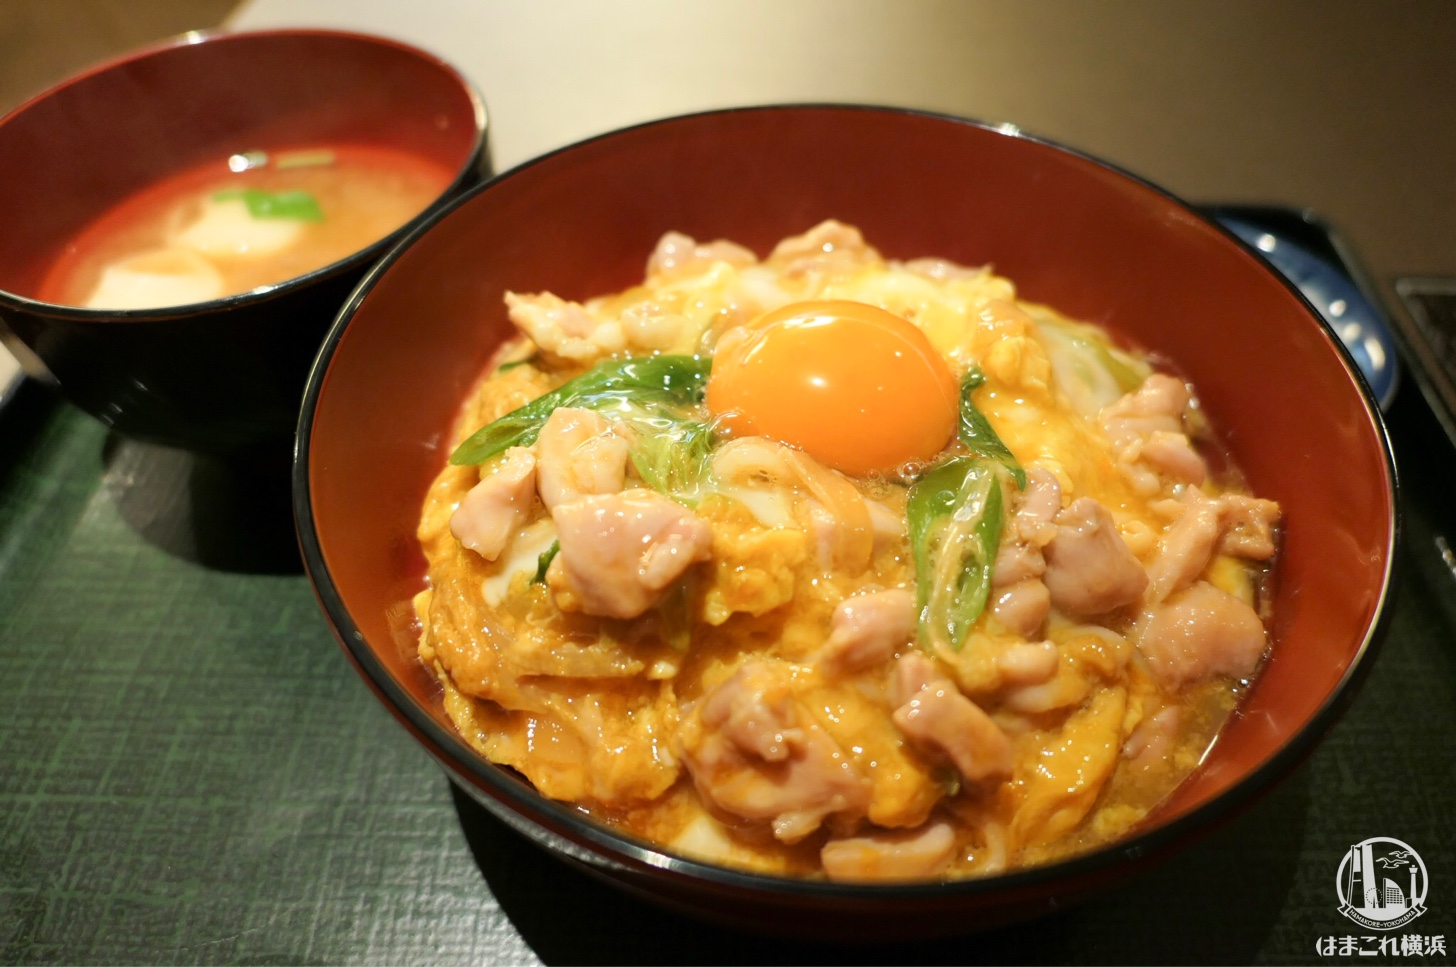 横浜高島屋「京都 八起庵」の親子丼は究極の卵オン卵！ふわふわレベル最高ランク